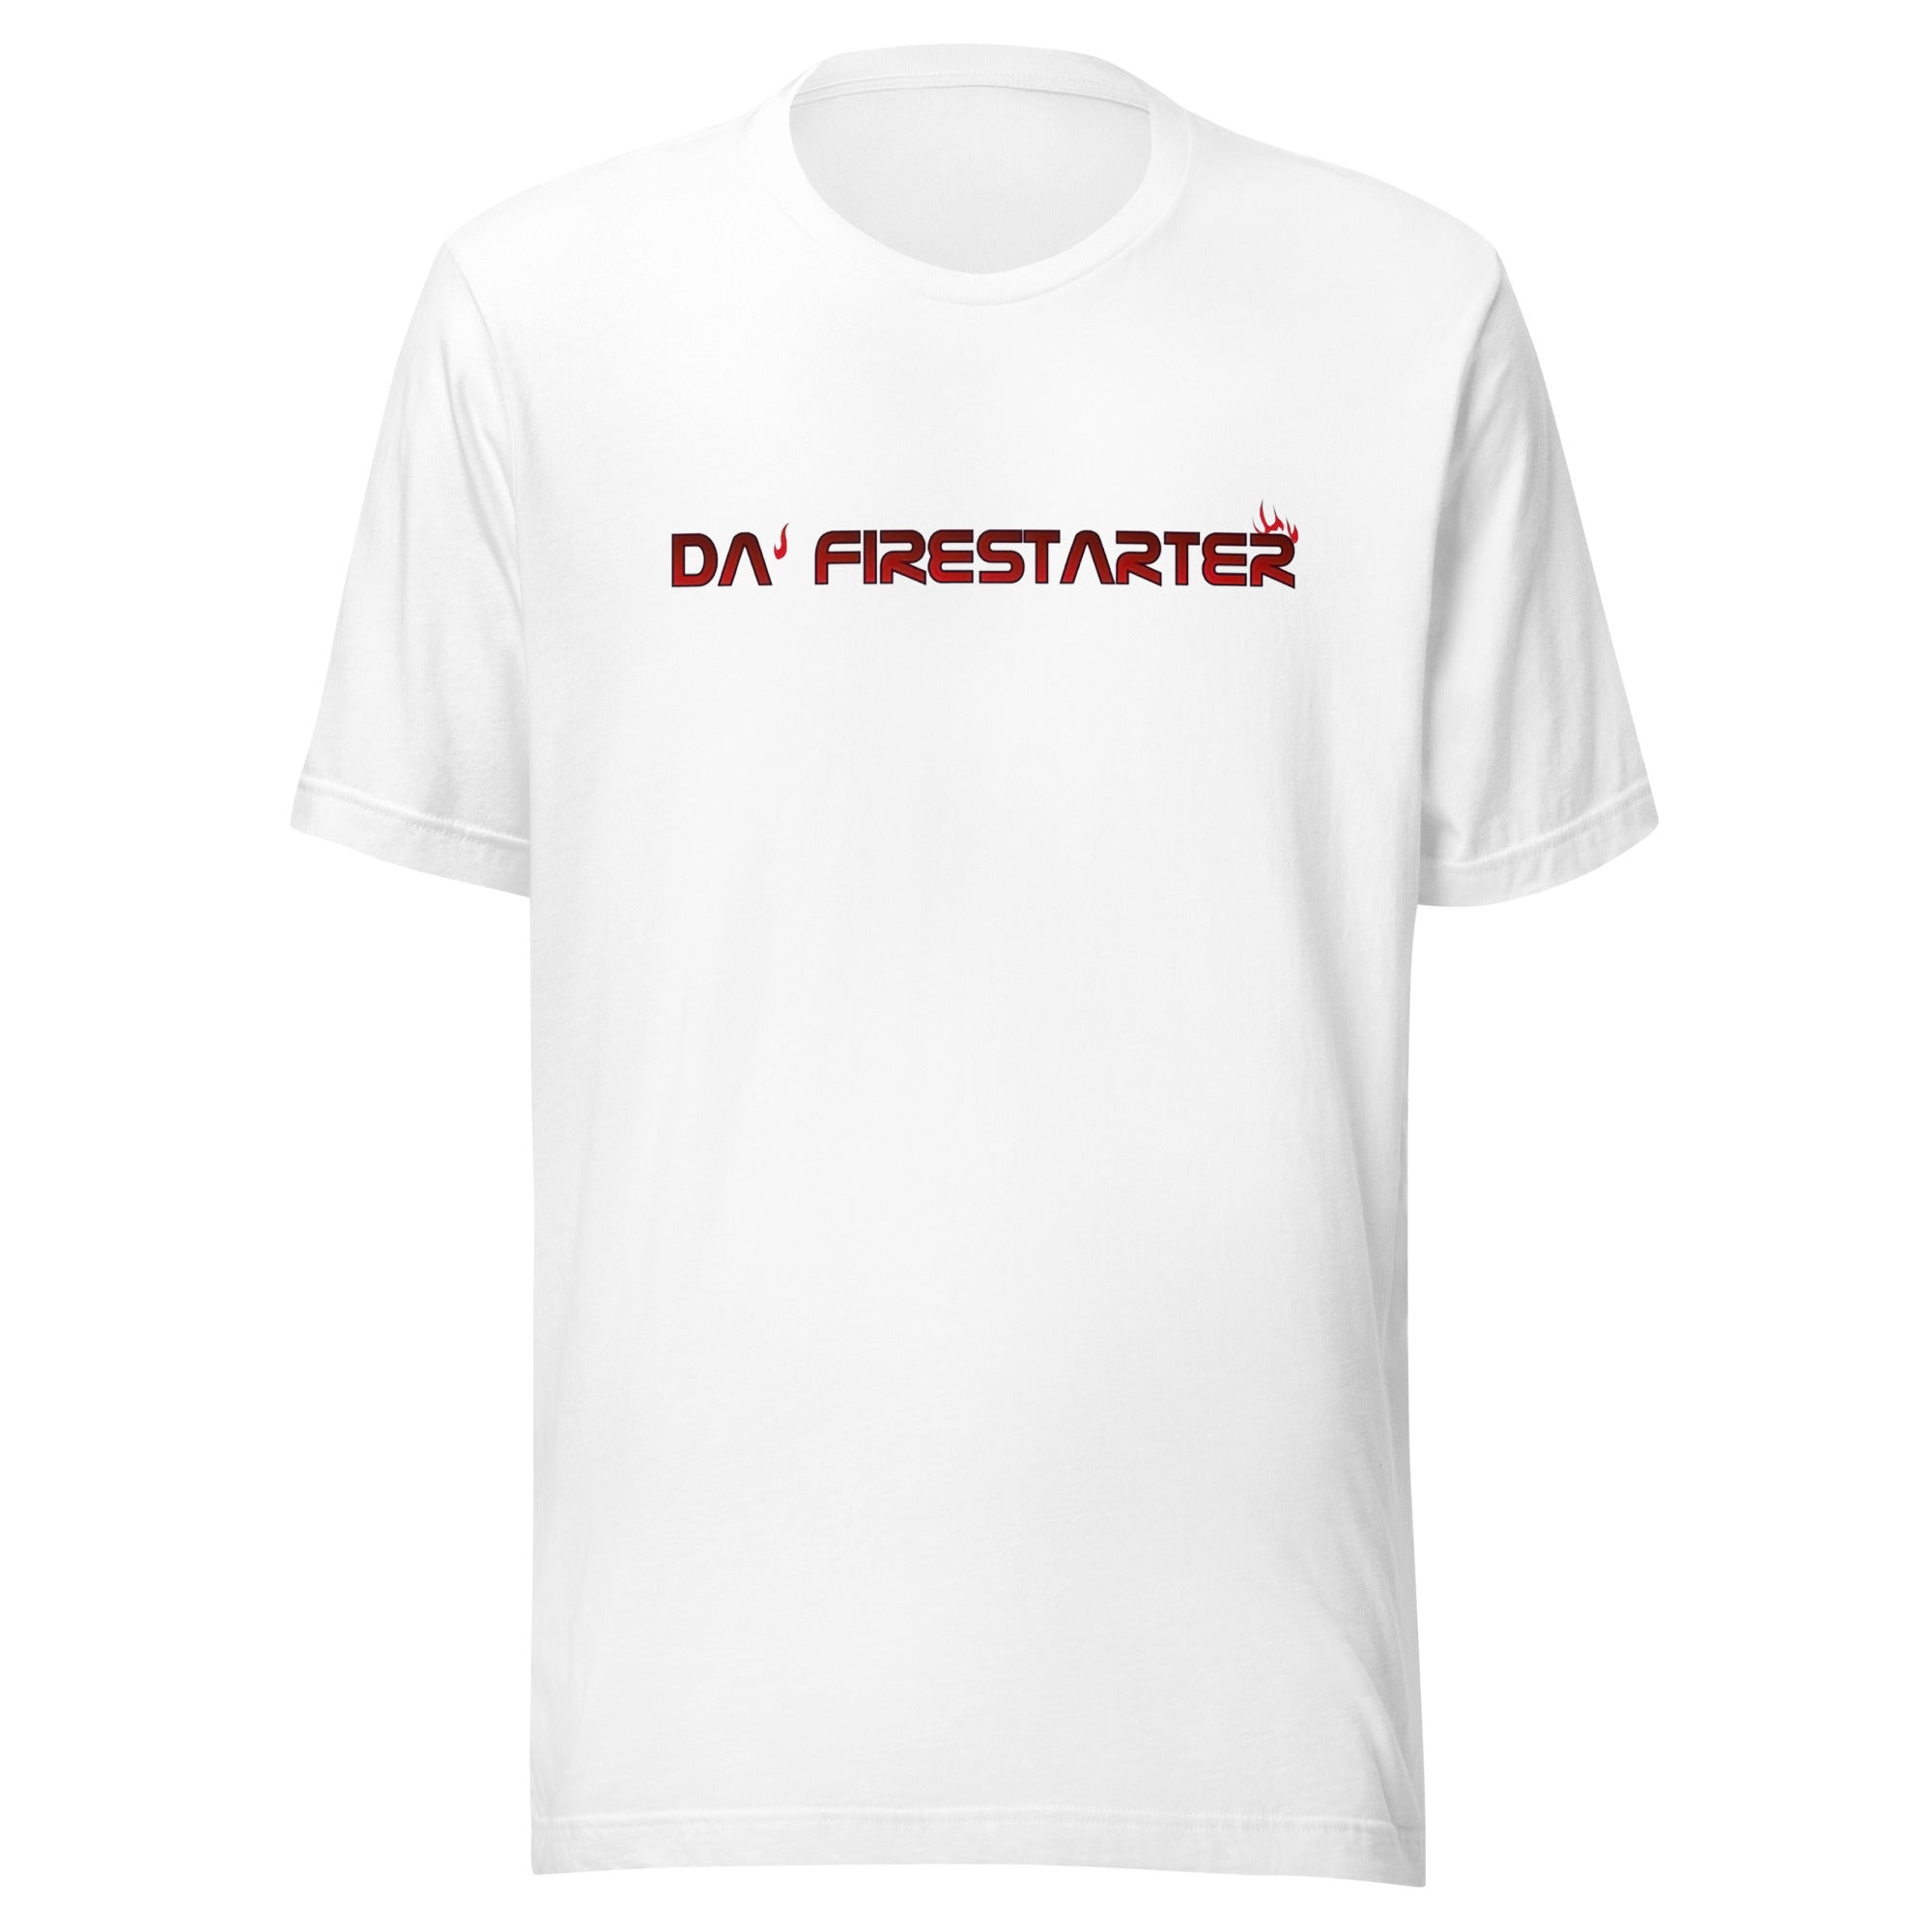 Da Firestarter - Unisex t-shirt